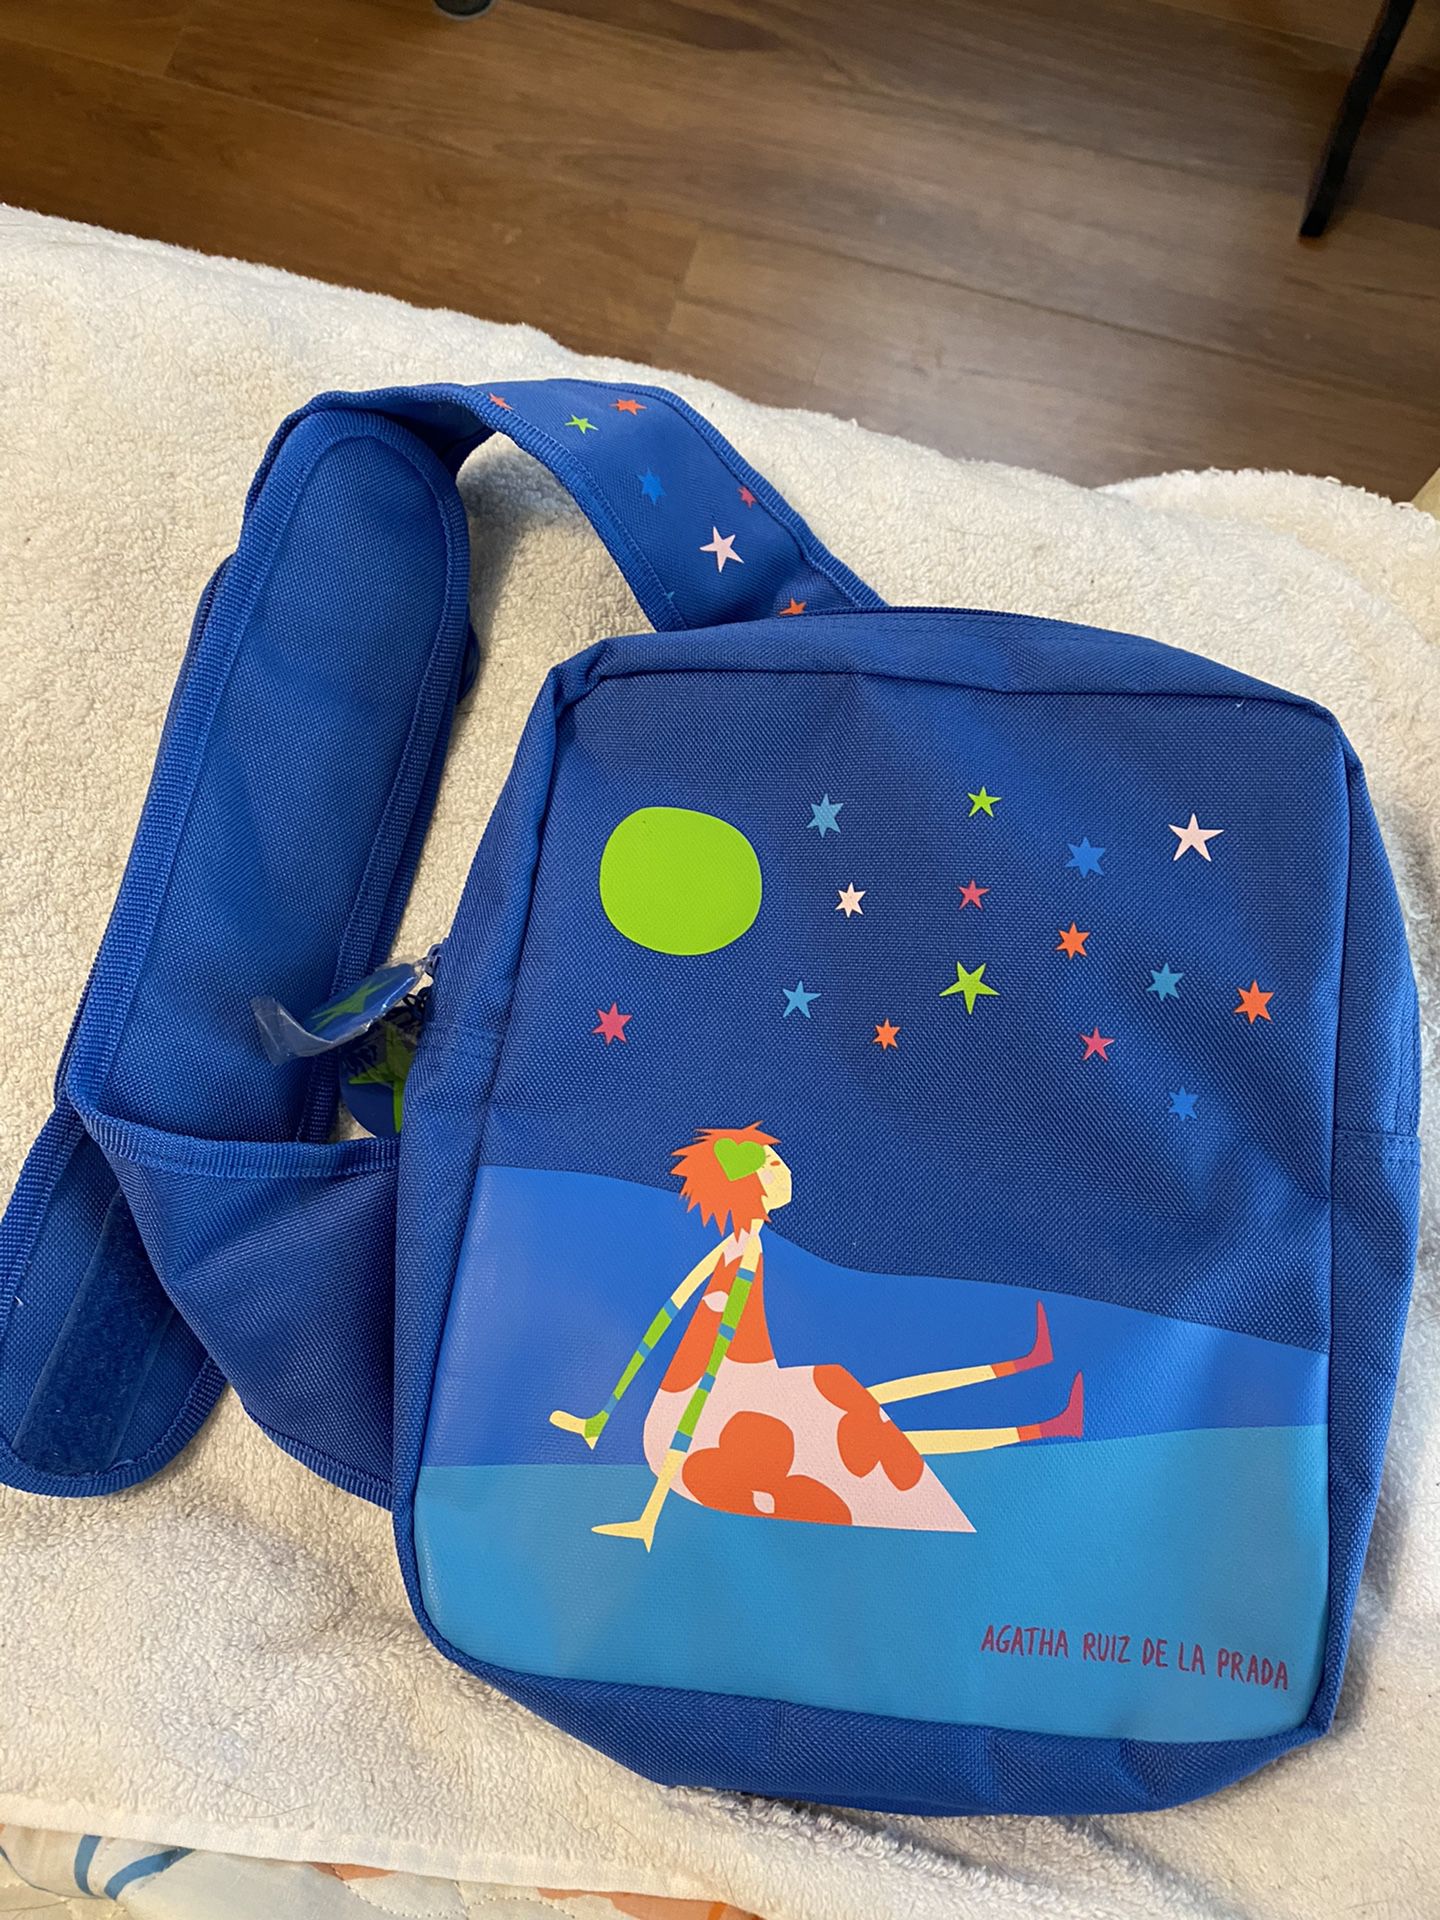 New children’s backpack